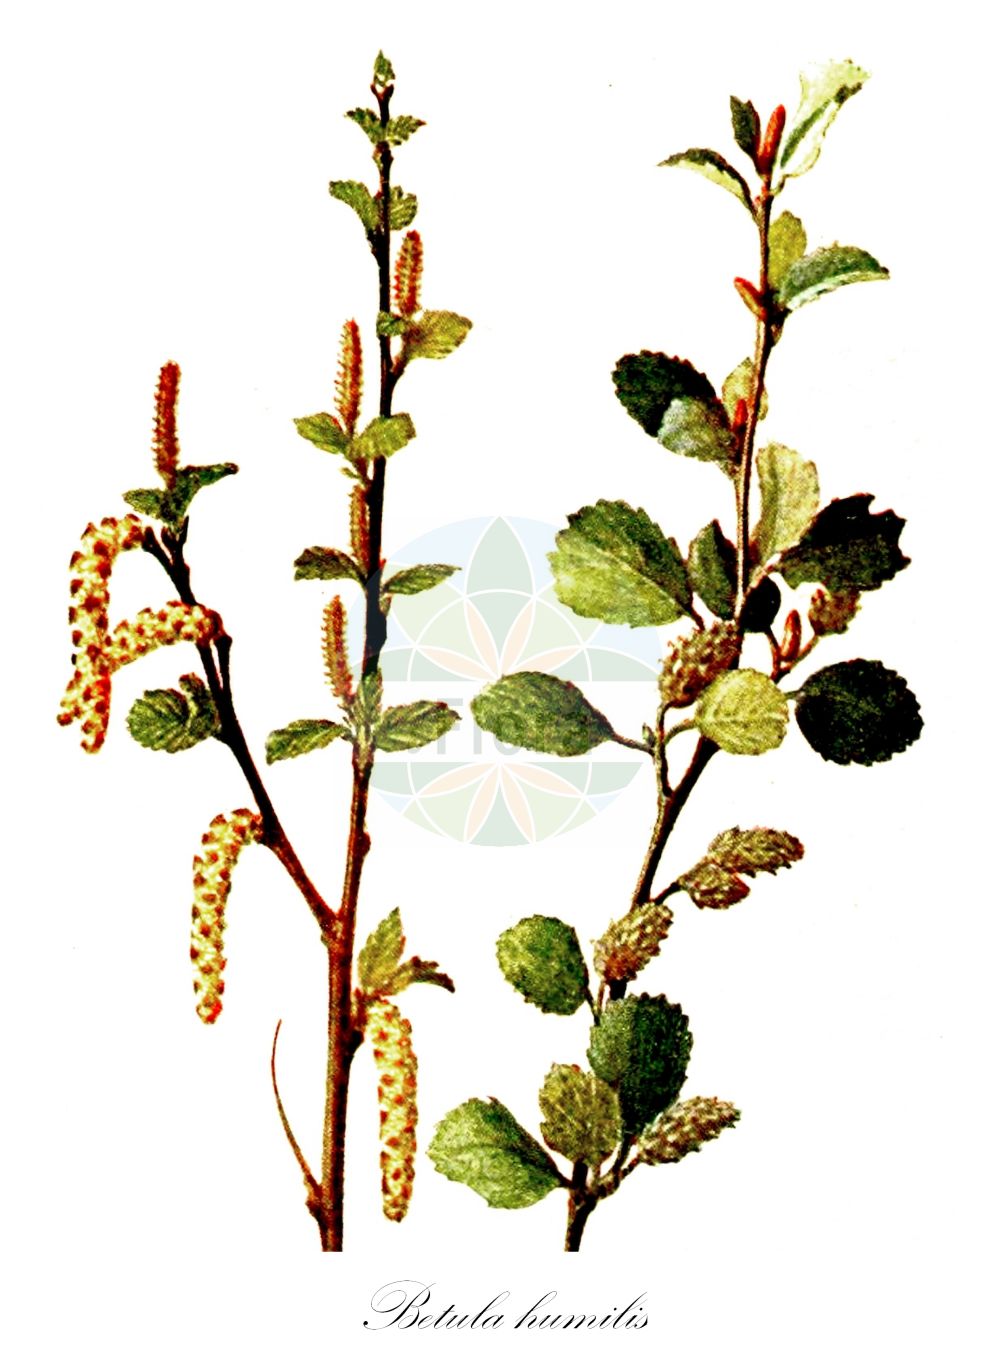 Historische Abbildung von Betula humilis (Strauch-Birke - Lesser Birch). Das Bild zeigt Blatt, Bluete, Frucht und Same. ---- Historical Drawing of Betula humilis (Strauch-Birke - Lesser Birch). The image is showing leaf, flower, fruit and seed.(Betula humilis,Strauch-Birke,Lesser Birch,Betula fruticans,Betula humilis,Betula kamtschatica,Betula myrsinoides,Betula oycowiensis,Betula palustris,Betula sibirica,Betula socolowii,Chamaebetula humilis,Strauch-Birke,Niedrige Birke,Lesser Birch,Shrubby Birch,Betula,Birke,Birch,Betulaceae,Birkengewächse,Birch family,Blatt,Bluete,Frucht,Same,leaf,flower,fruit,seed,Klein (1910))